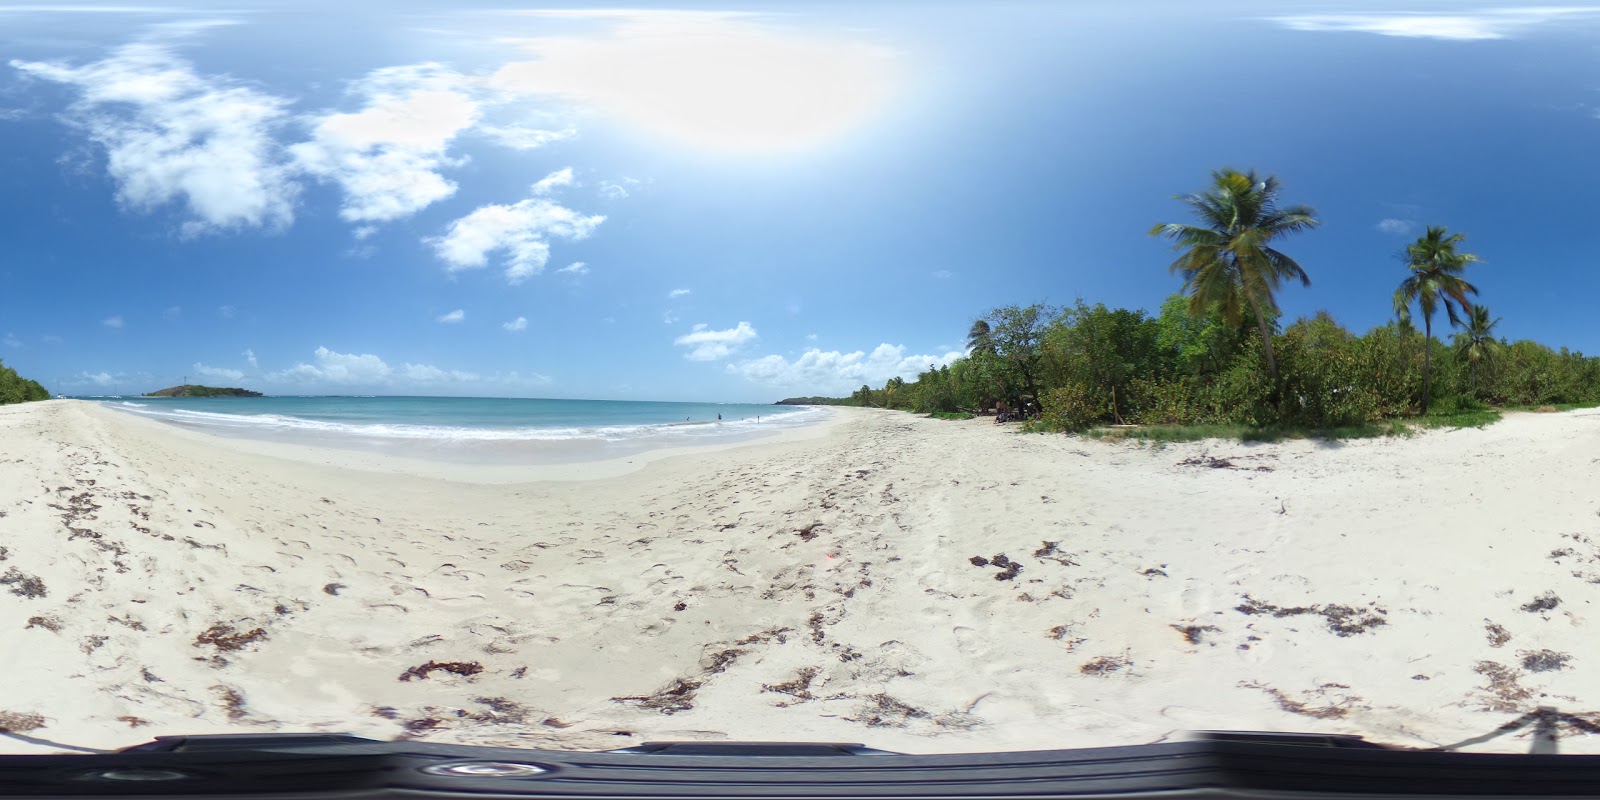 Zdjęcie Grande terre beach - popularne miejsce wśród znawców relaksu